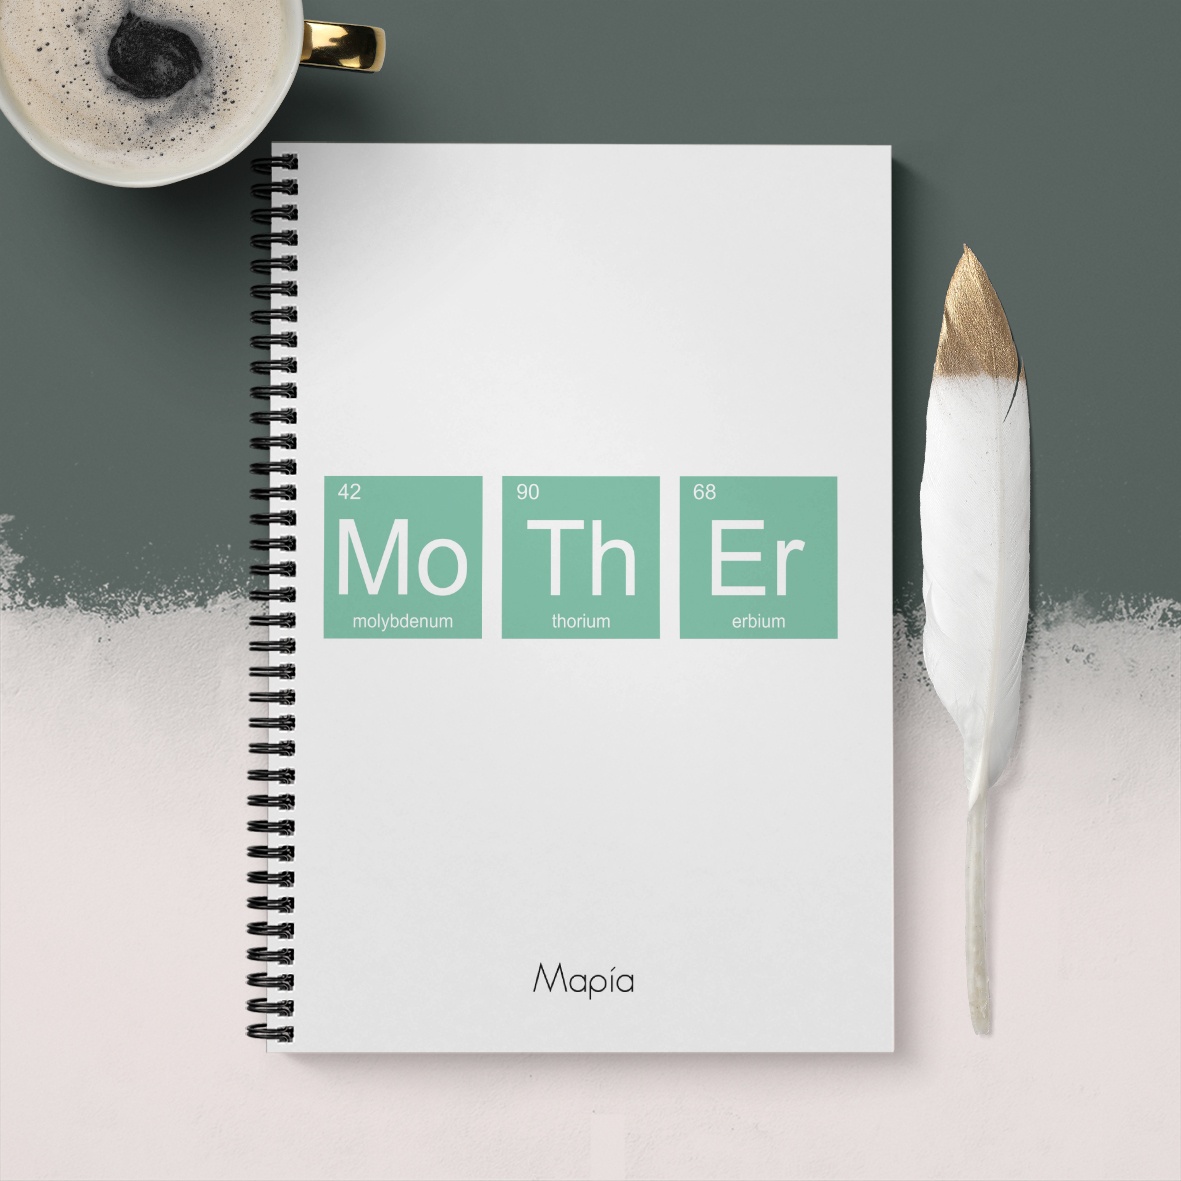 Mo Th Er - Σημειωματάριο